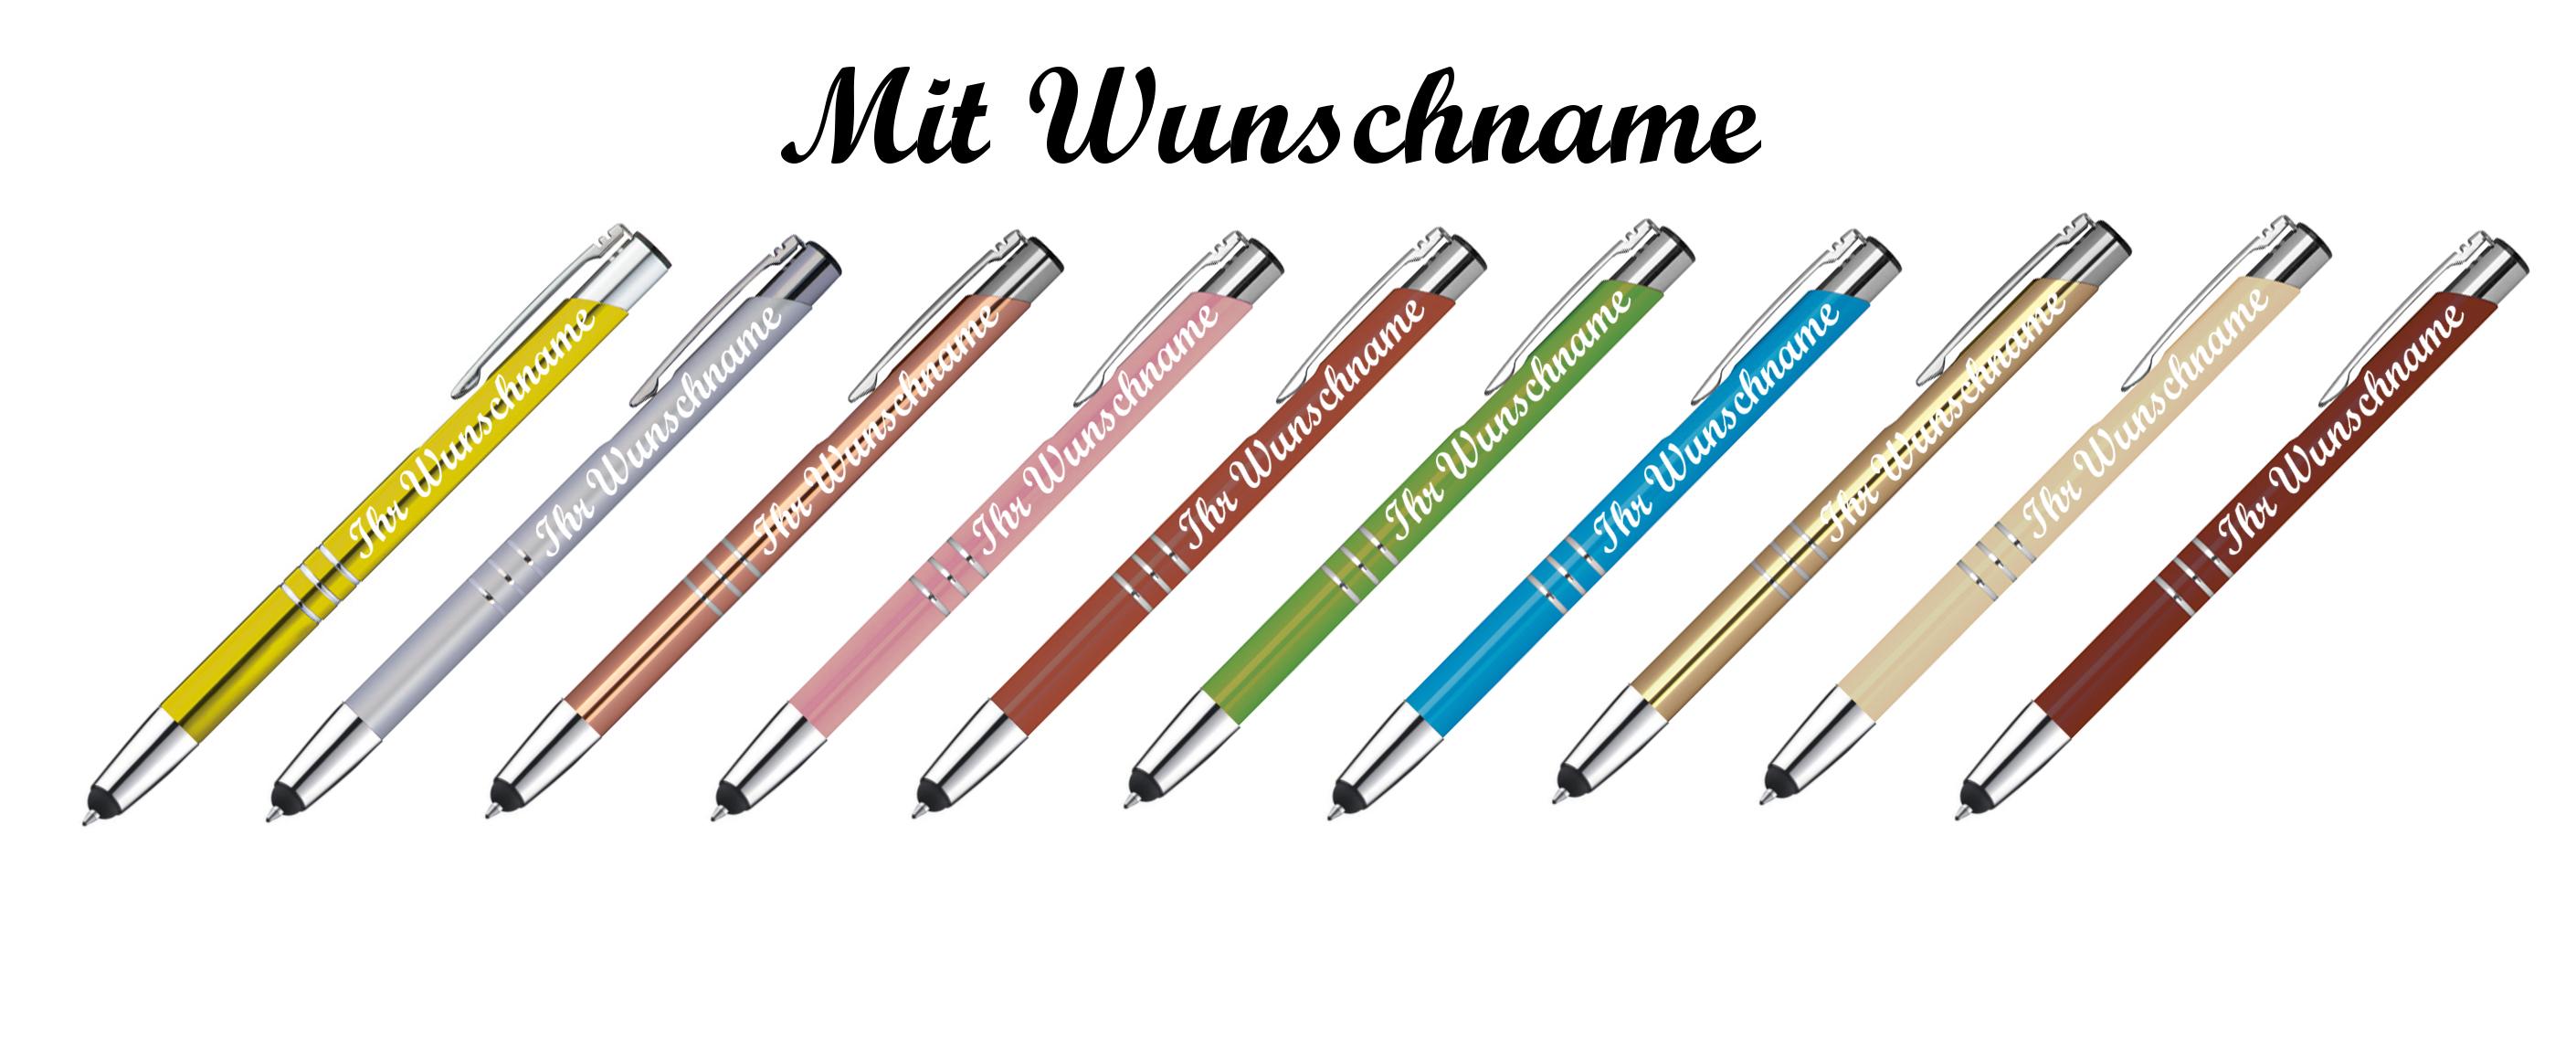 20 Touchpen Kugelschreiber aus Metall mit Gravur 20 verschiedene Farben